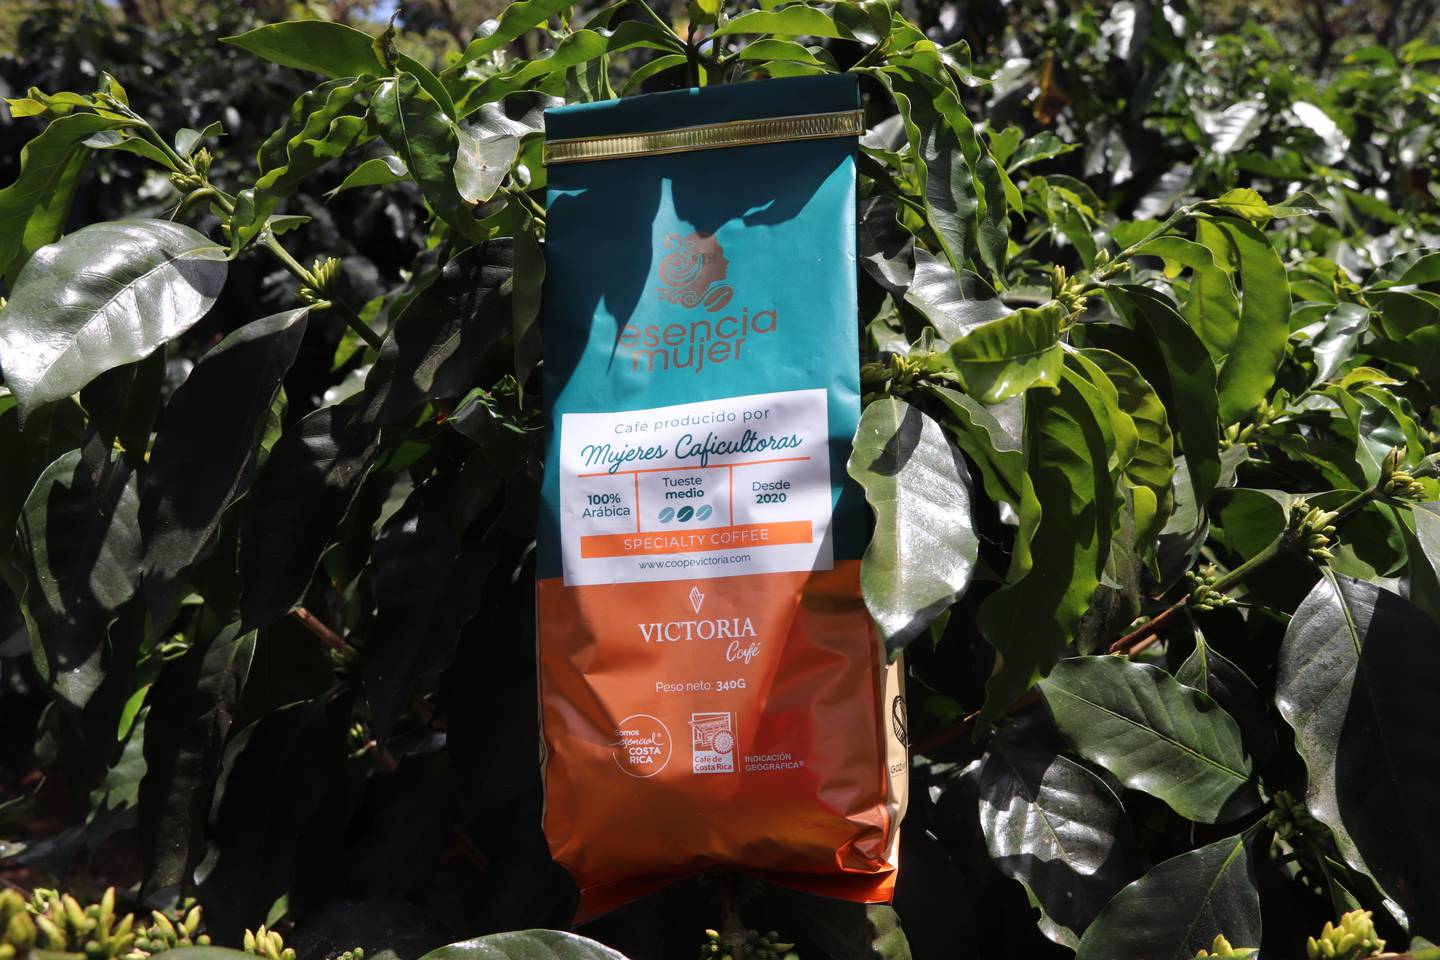 De las faldas del Volcán Poás y en los alrededores de Grecia en Alajuela, son las 34 mujeres caficultoras que unieron sus fuerzas para cultivar y recolectar café con calidad de exportación, la marca es Café Esencia de Mujer